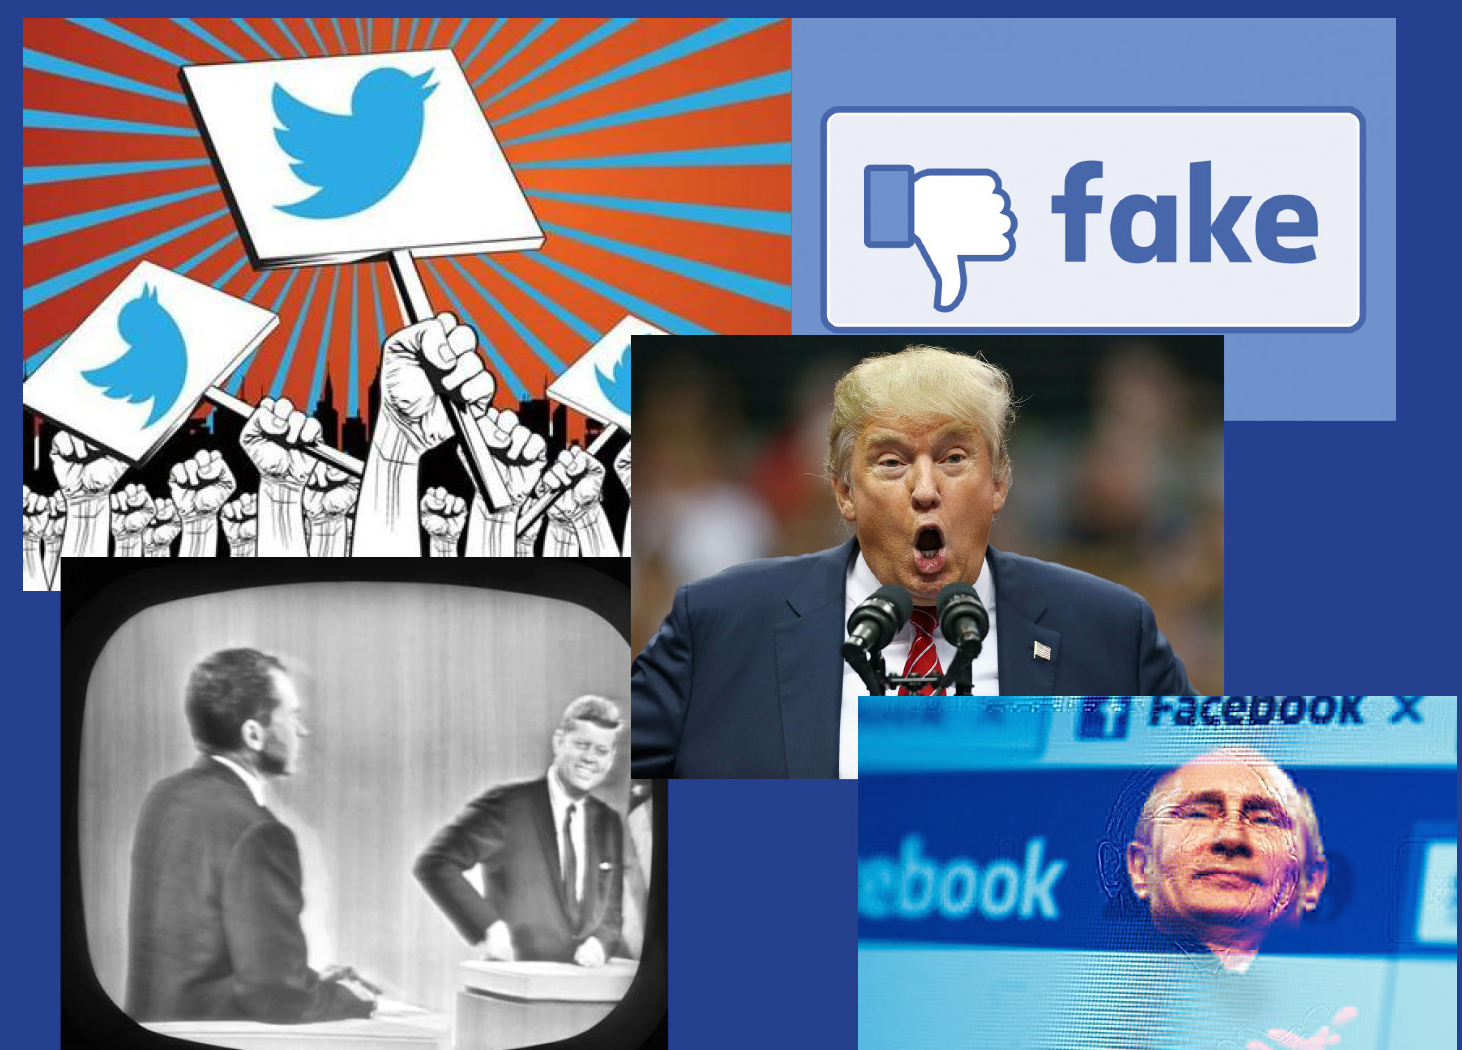 mass media collage of images of  facebook, trumpk, putin, etc.